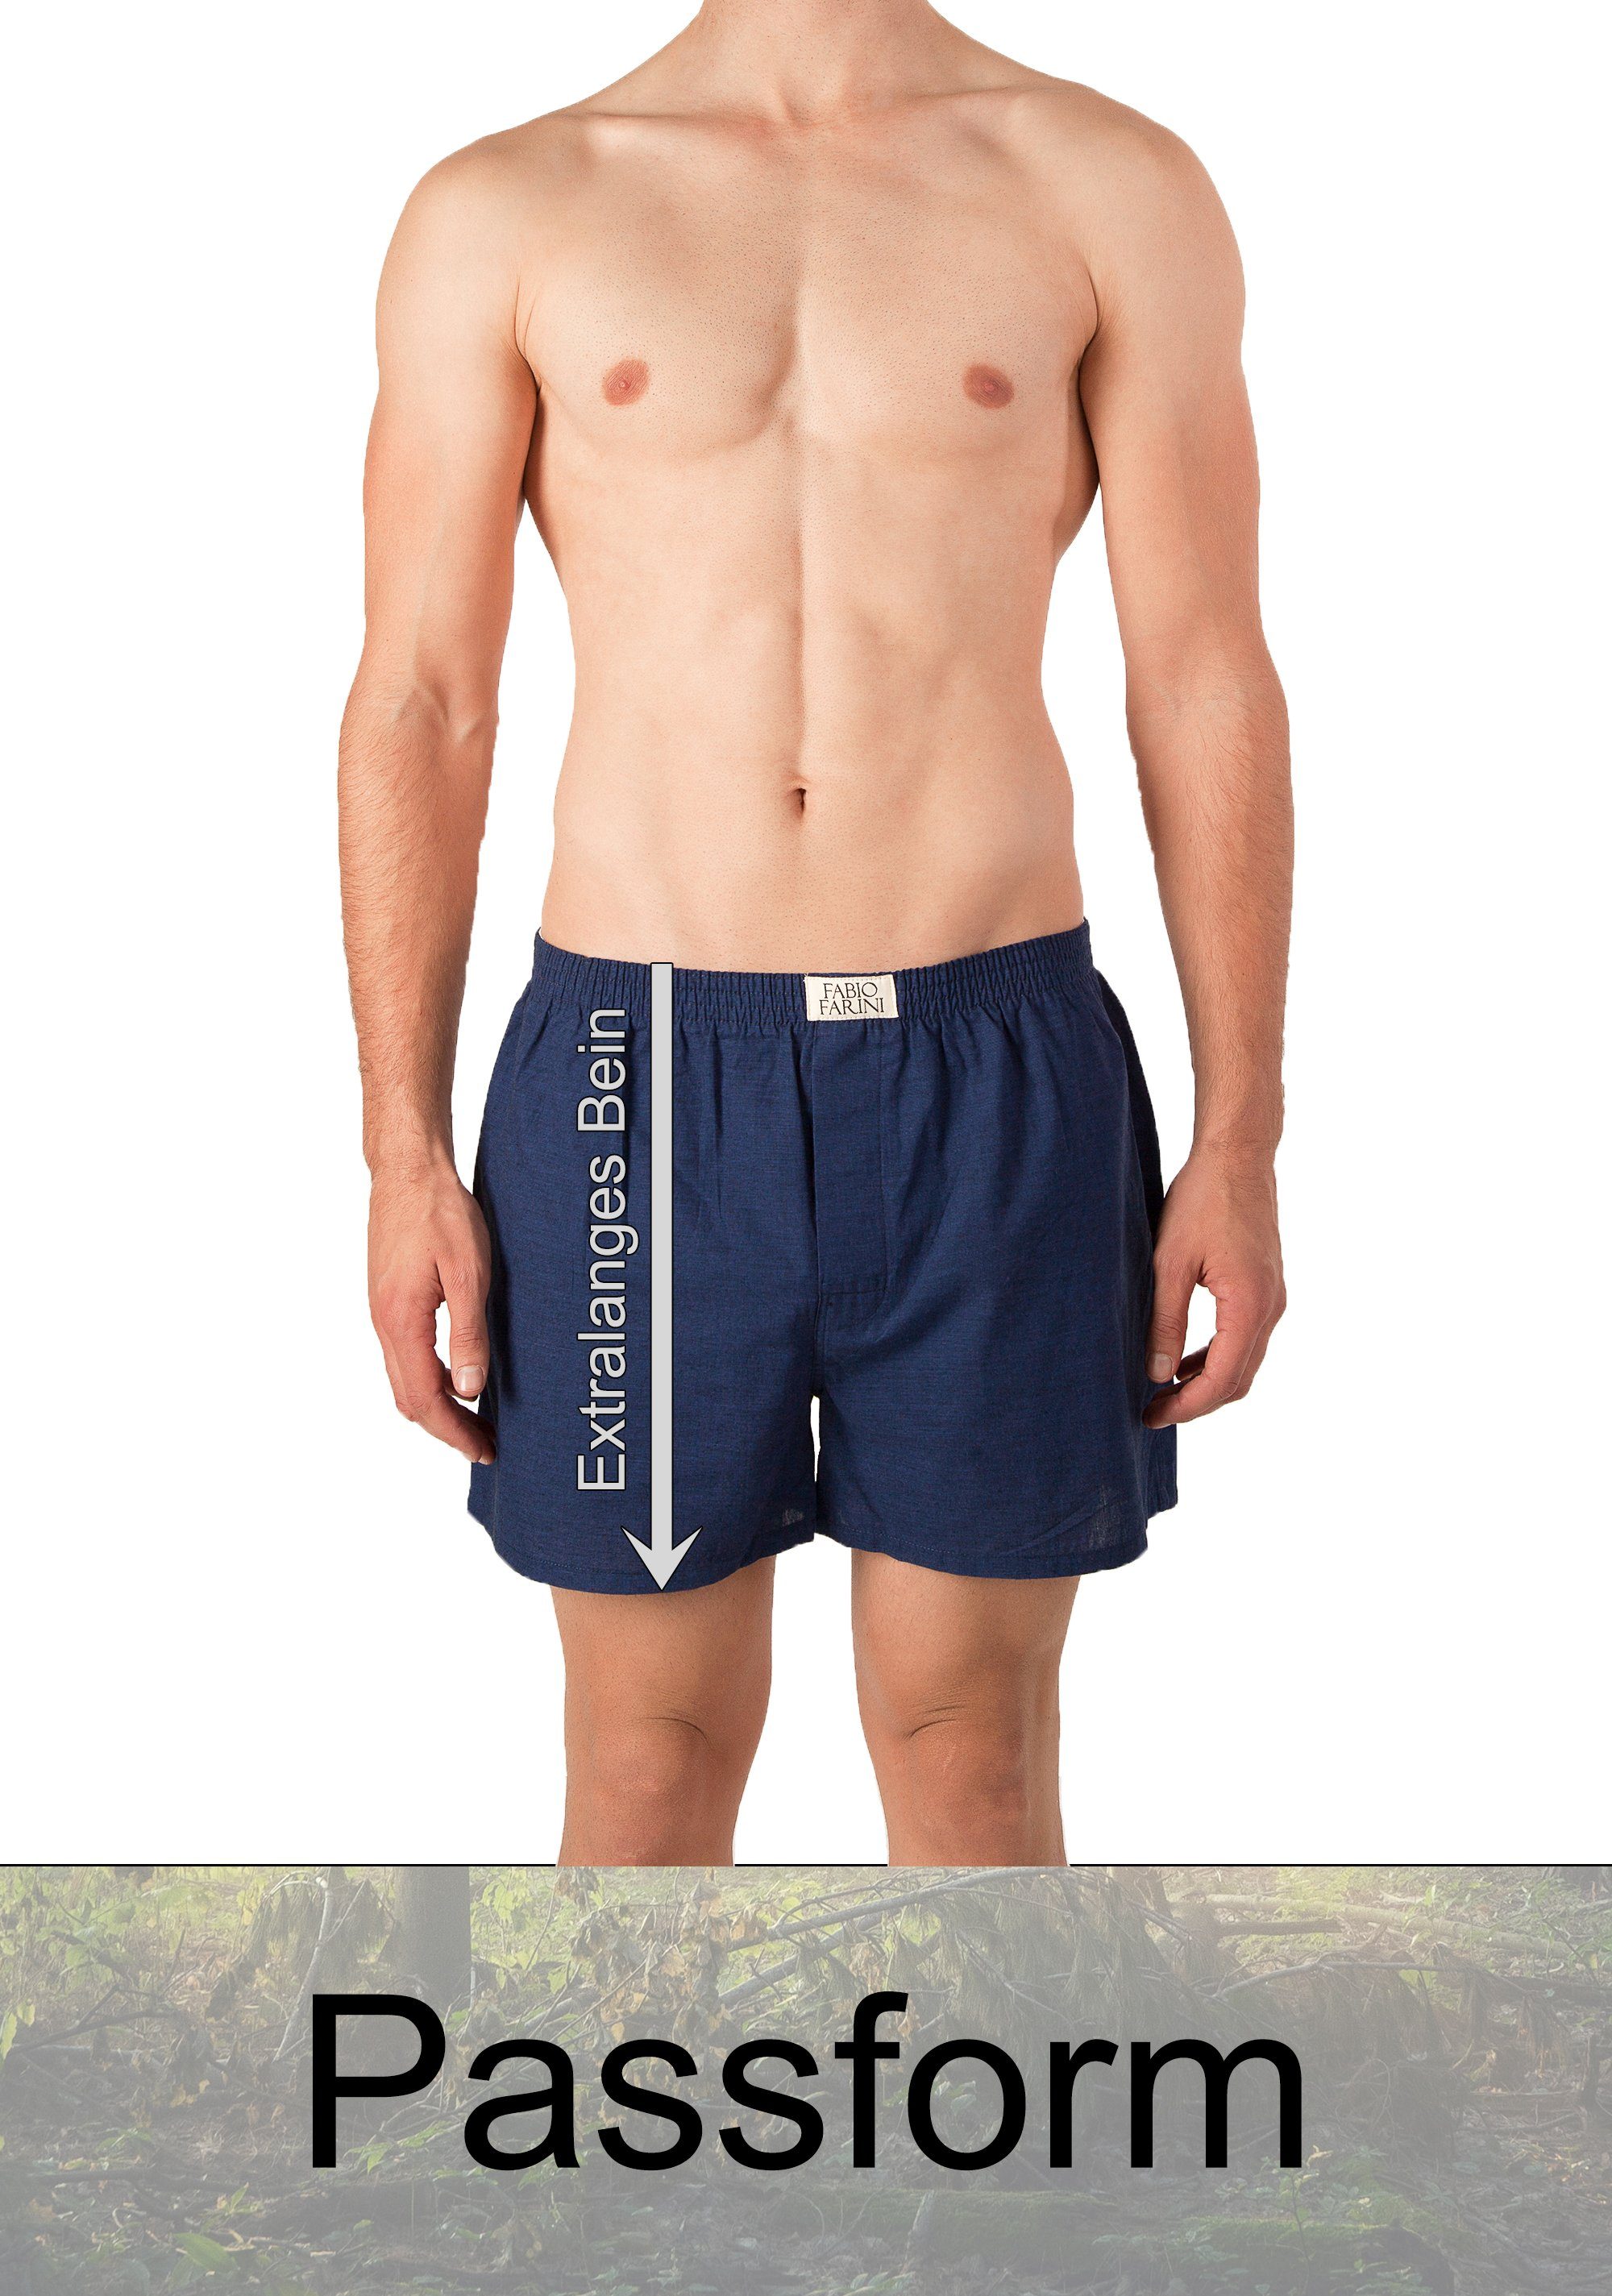 Fabio Farini Webboxer Herren Boxershorts 24 Passform - Baumwolle (4-St) Männer Unterhosen weite bequeme, Set aus